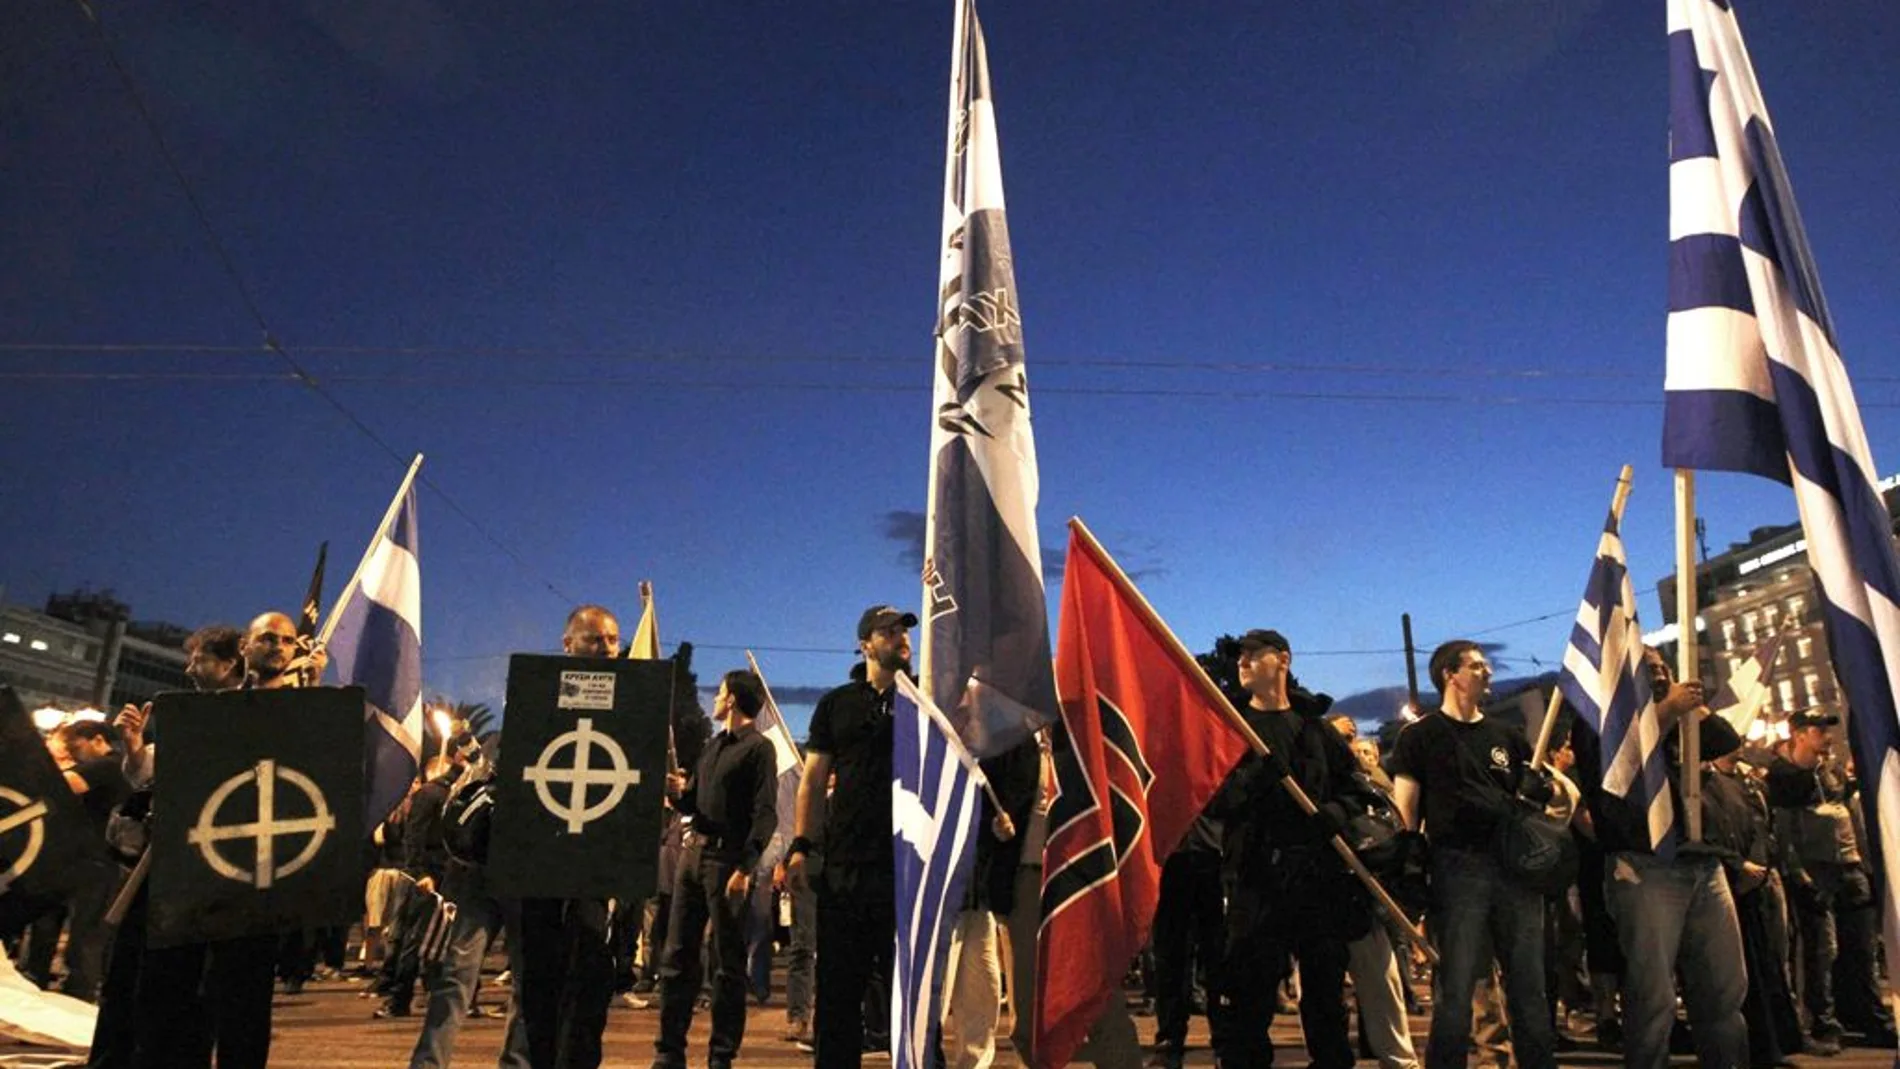 Manifestación del partido neonazi Amanecer Dorado en Grecia